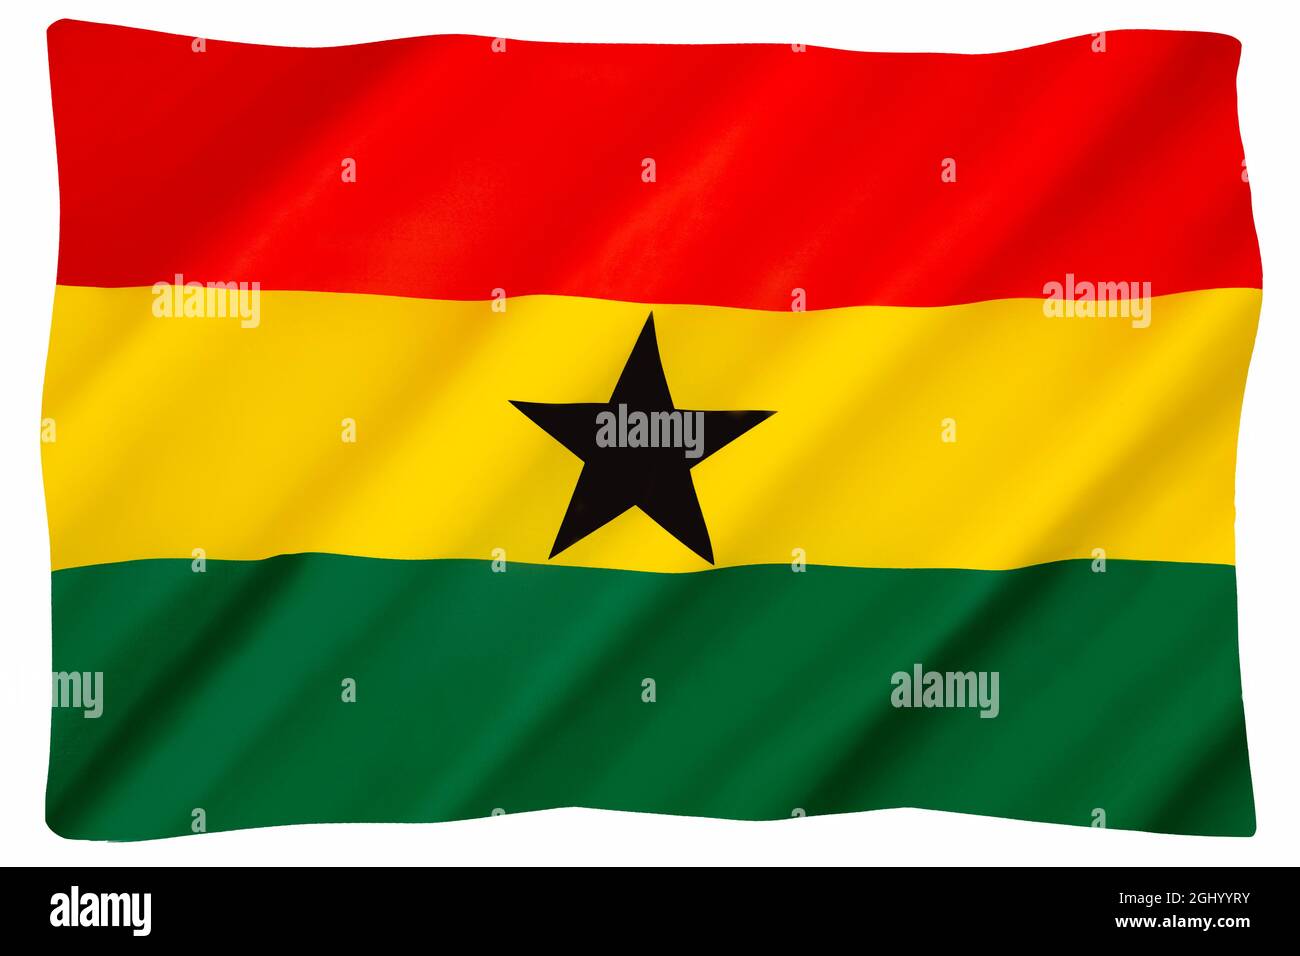 Le drapeau national du Ghana. Conçu en 1957 et adopté la même année lorsque le Ghana a atteint son indépendance. Il utilise les couleurs panafricaines du rouge Banque D'Images